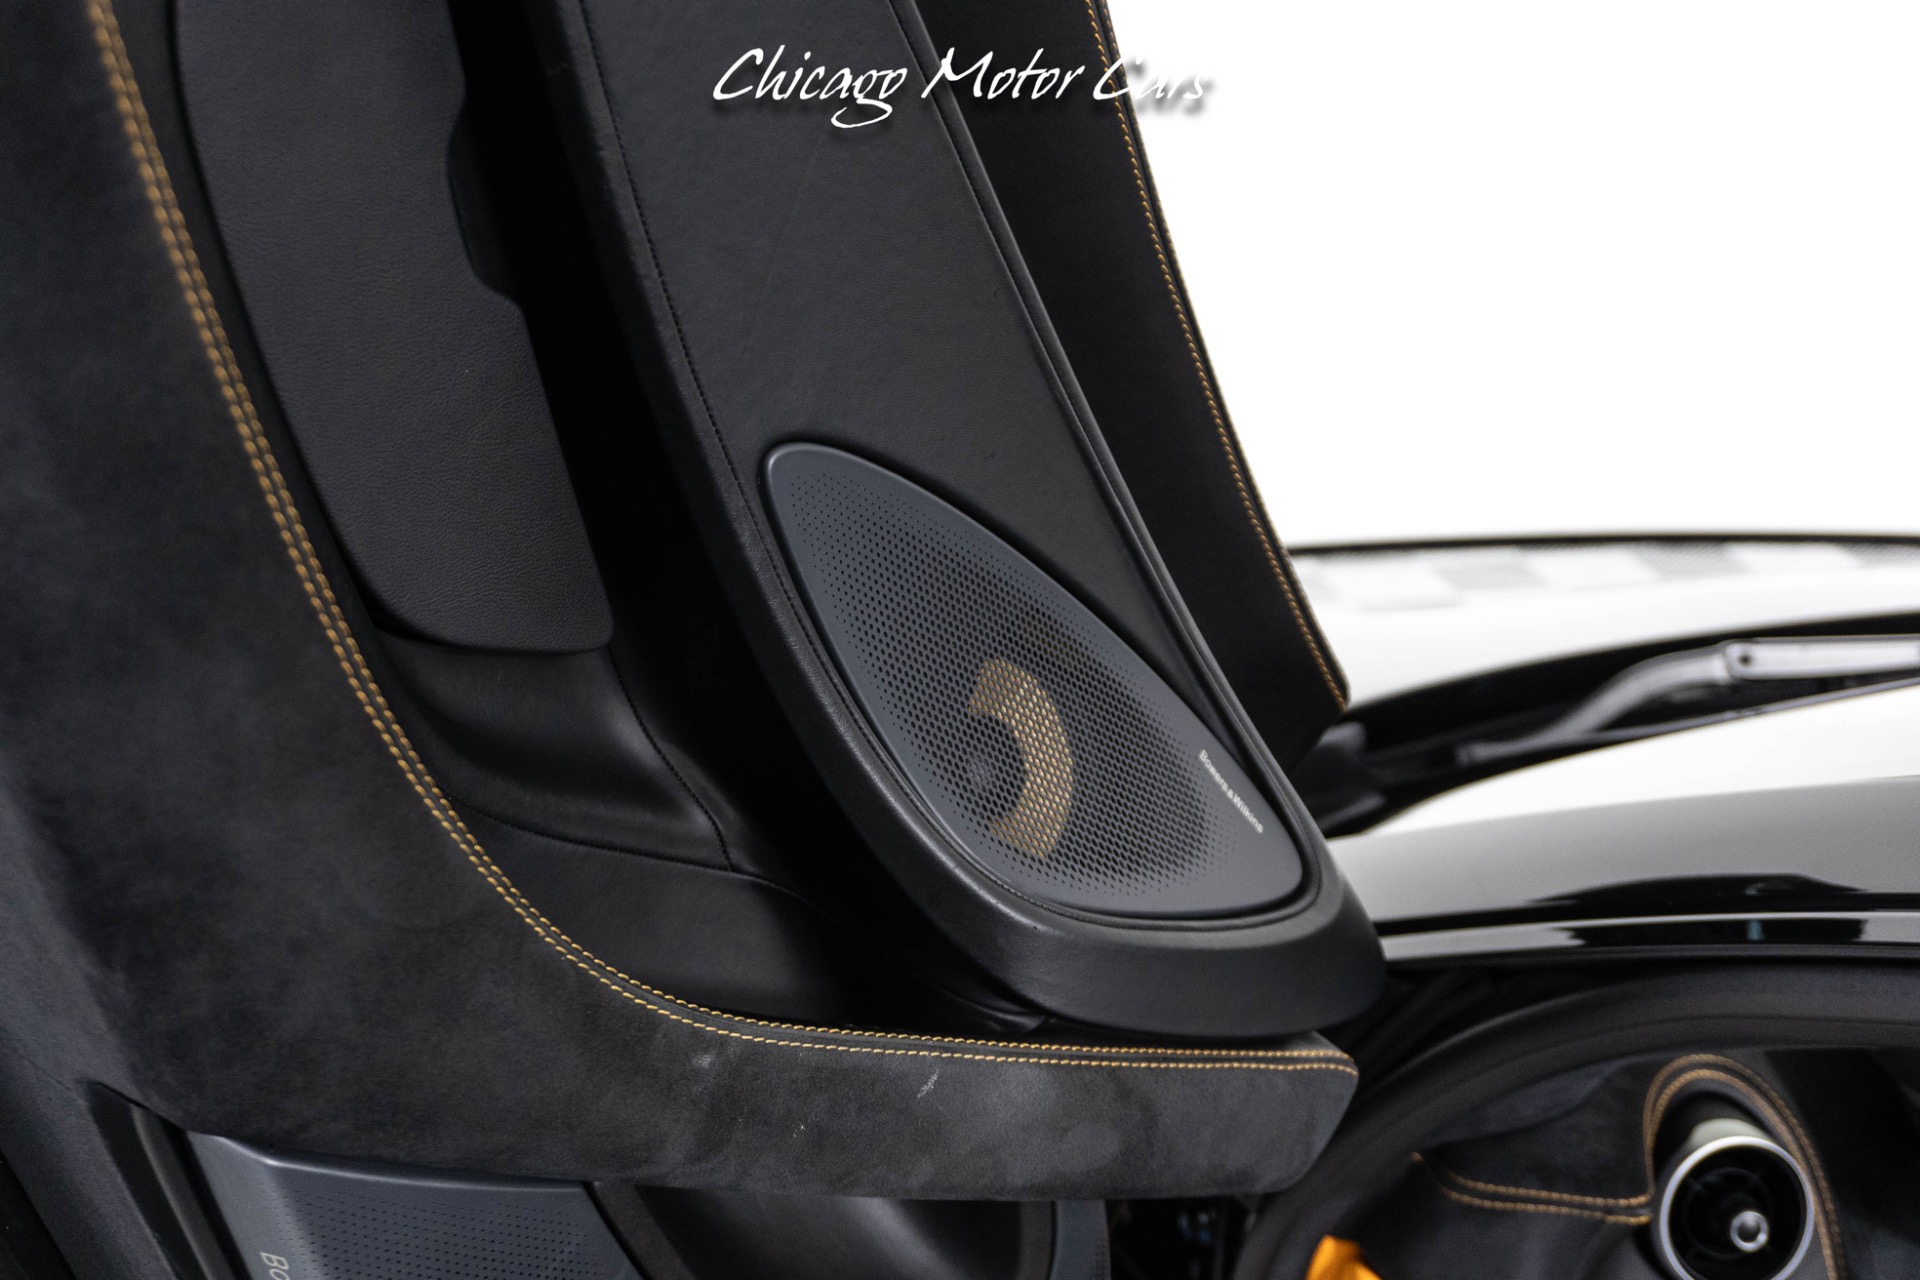 Used-2019-McLaren-570S-Spider-Convertible-Only-6K-Miles-MSO-Titanium-Exhaust-Carbon-Ceramic-Brakes